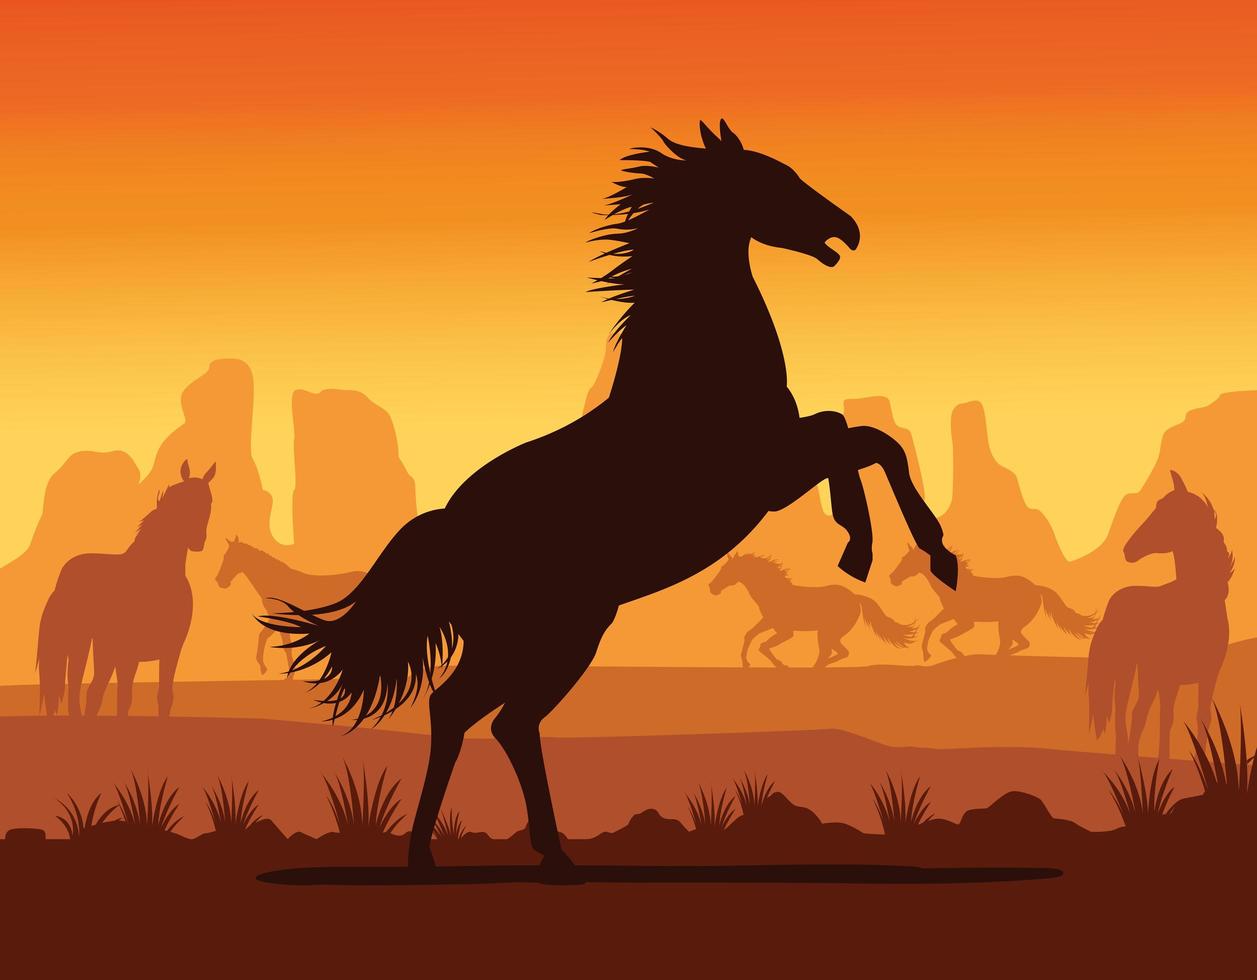 horse black animal silhouette in desert landscape vector